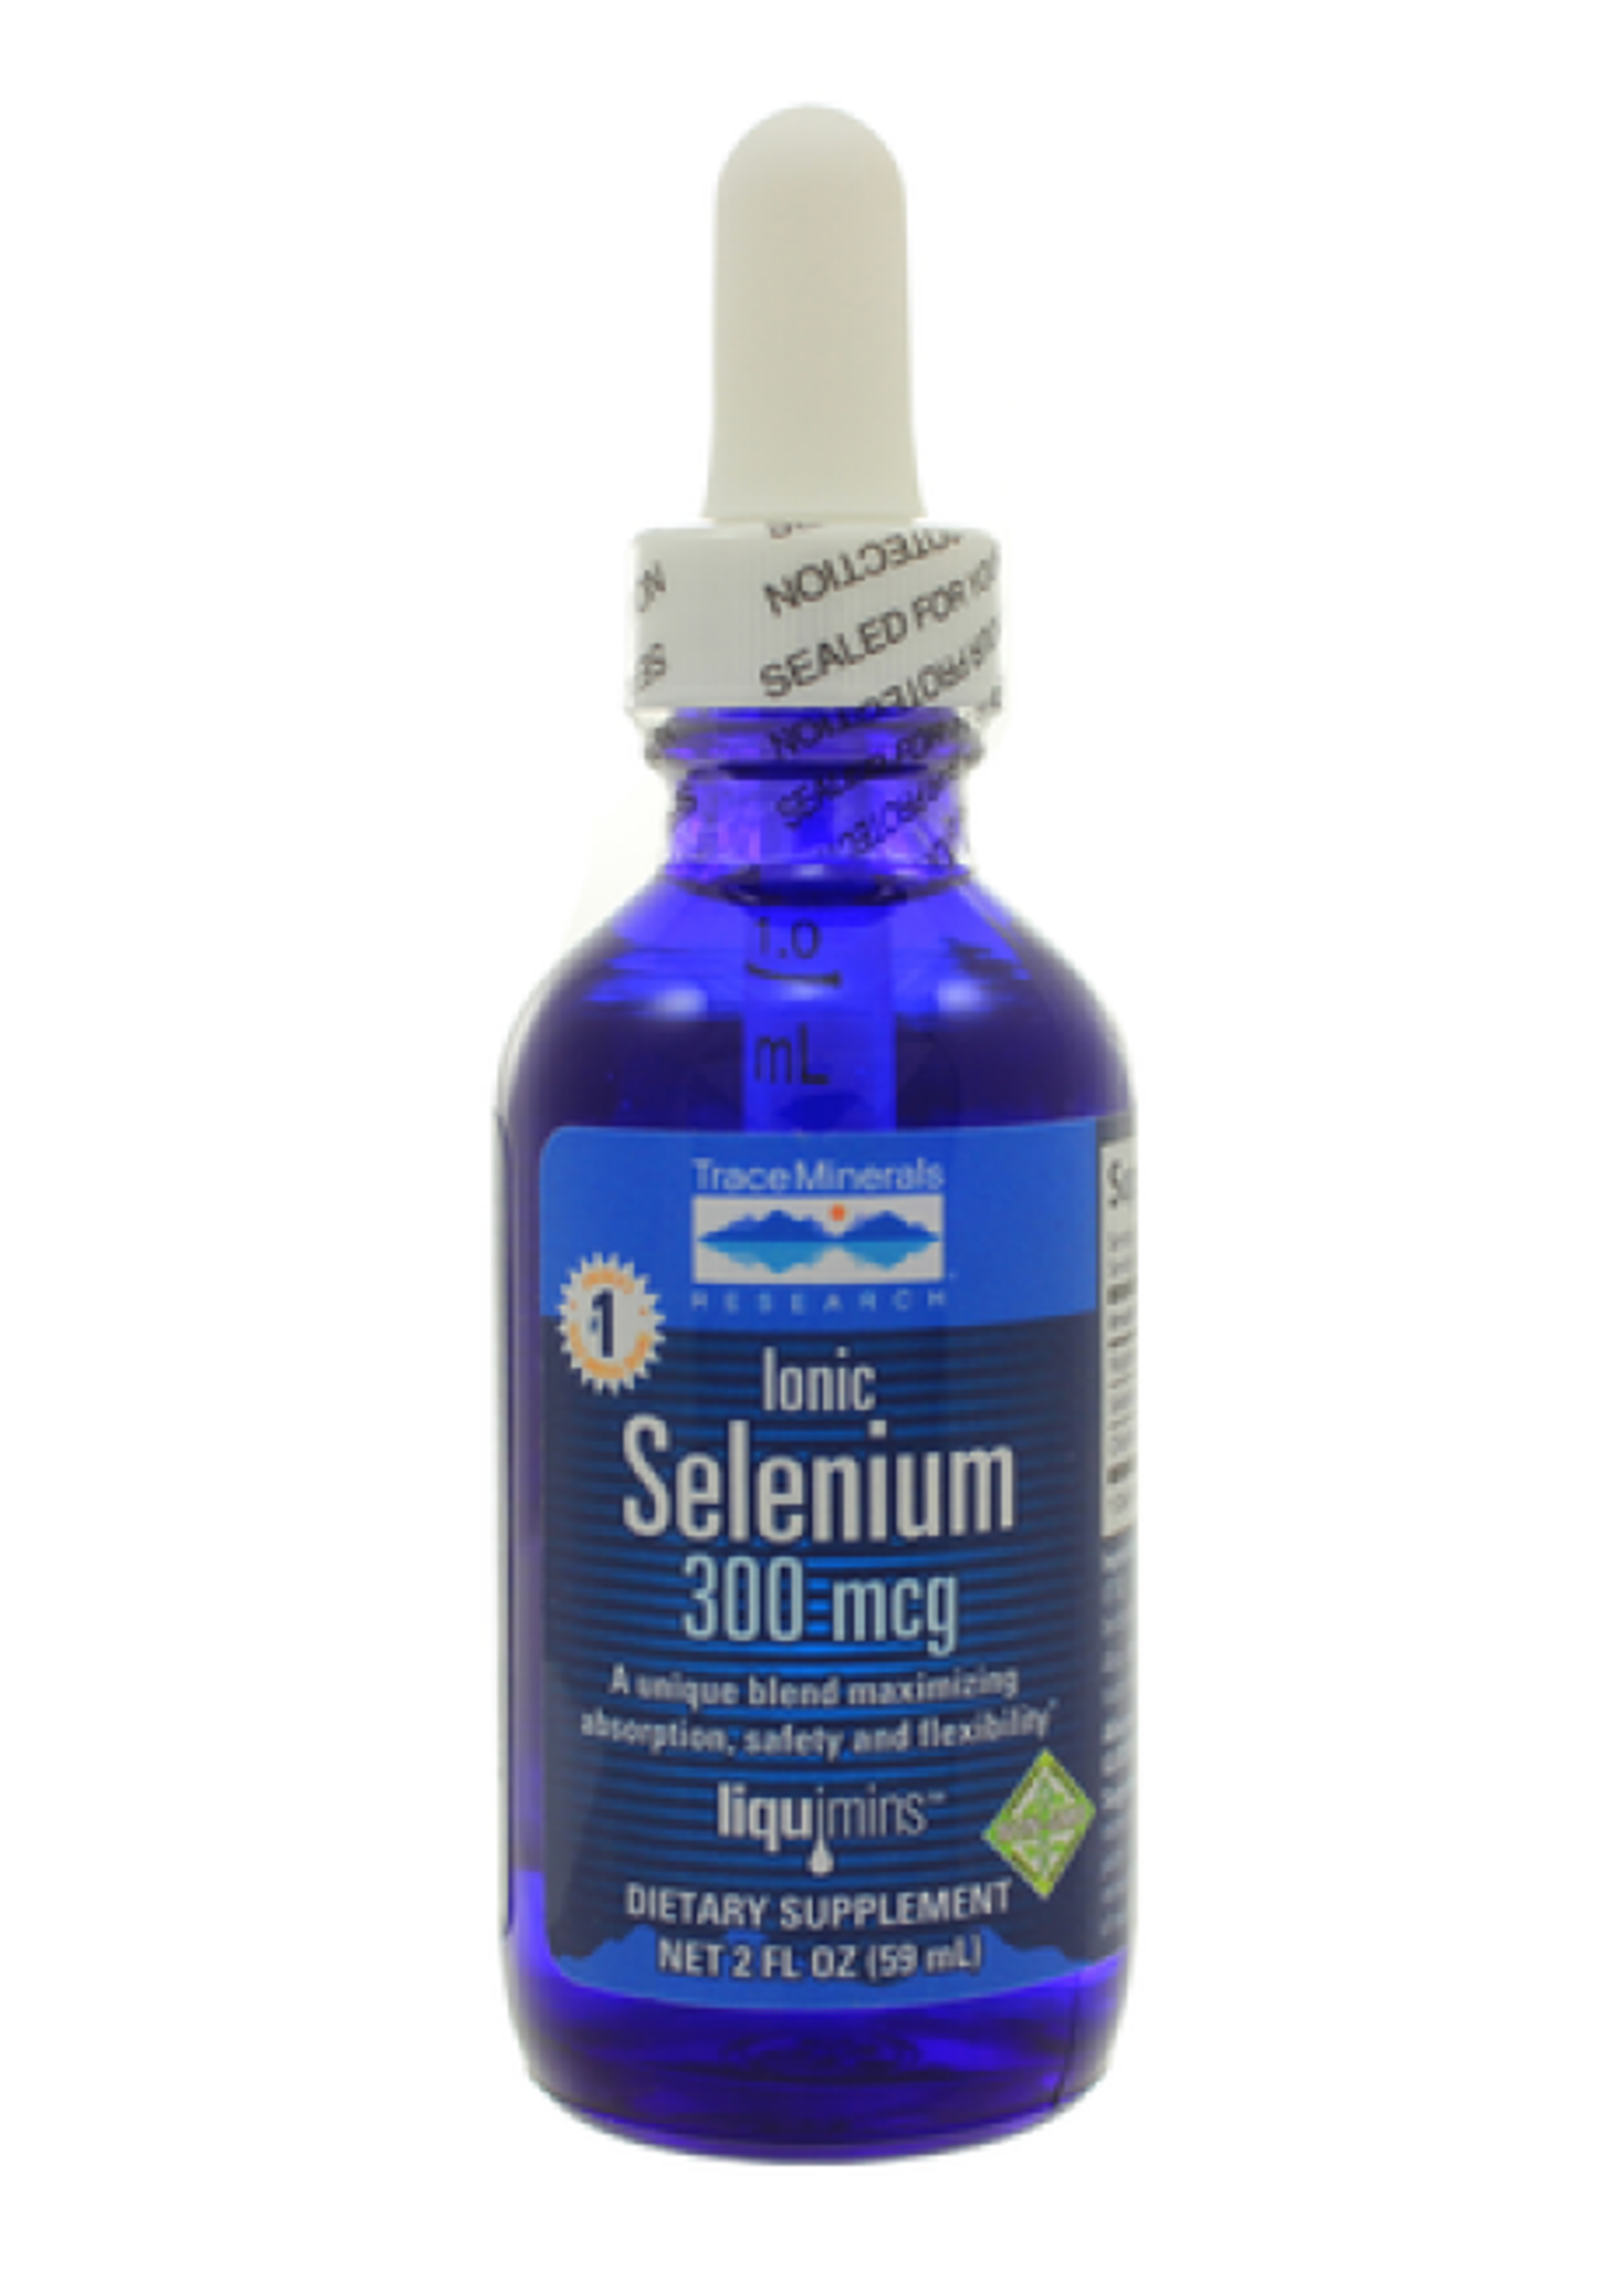 Liquid Selenium